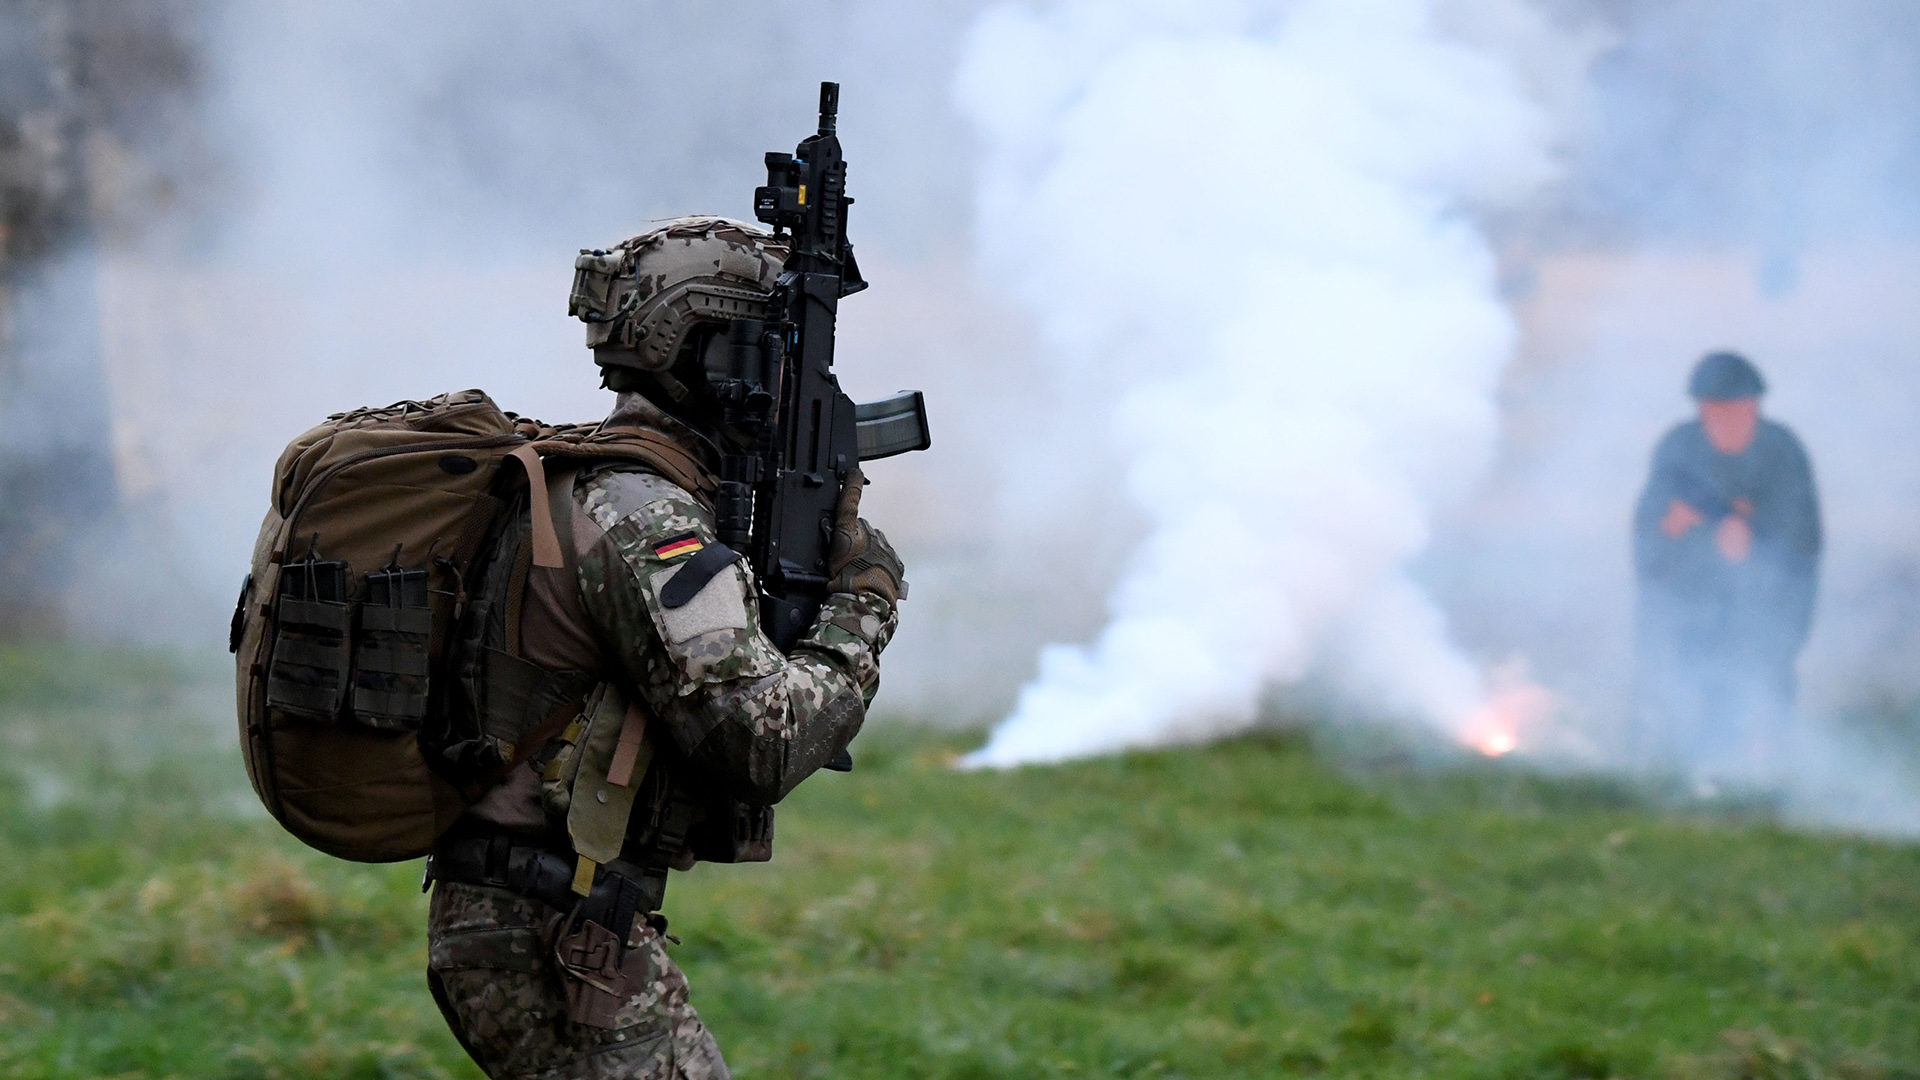 Soldat der KSK im Training mit einem Gewehr - im Hintergrund Rauch | picture alliance/dpa